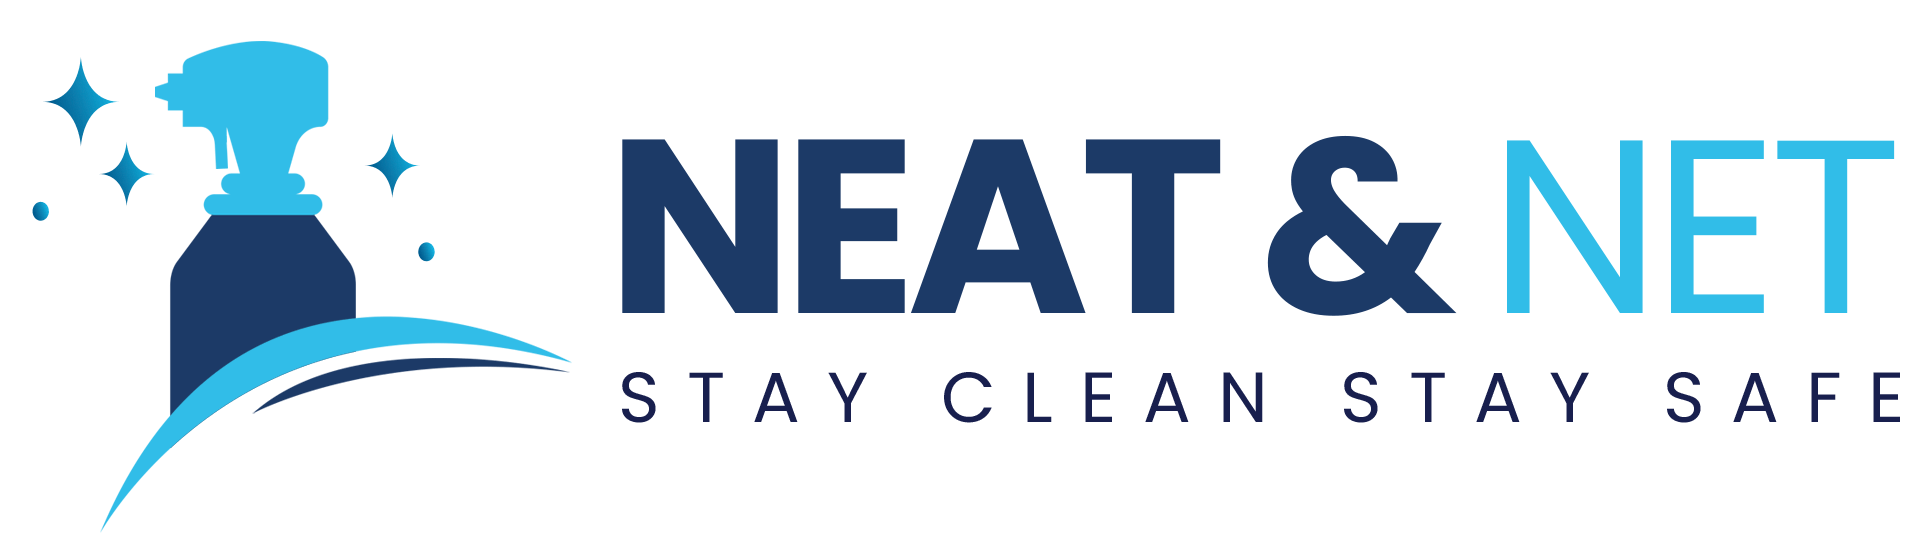 Neat & Net